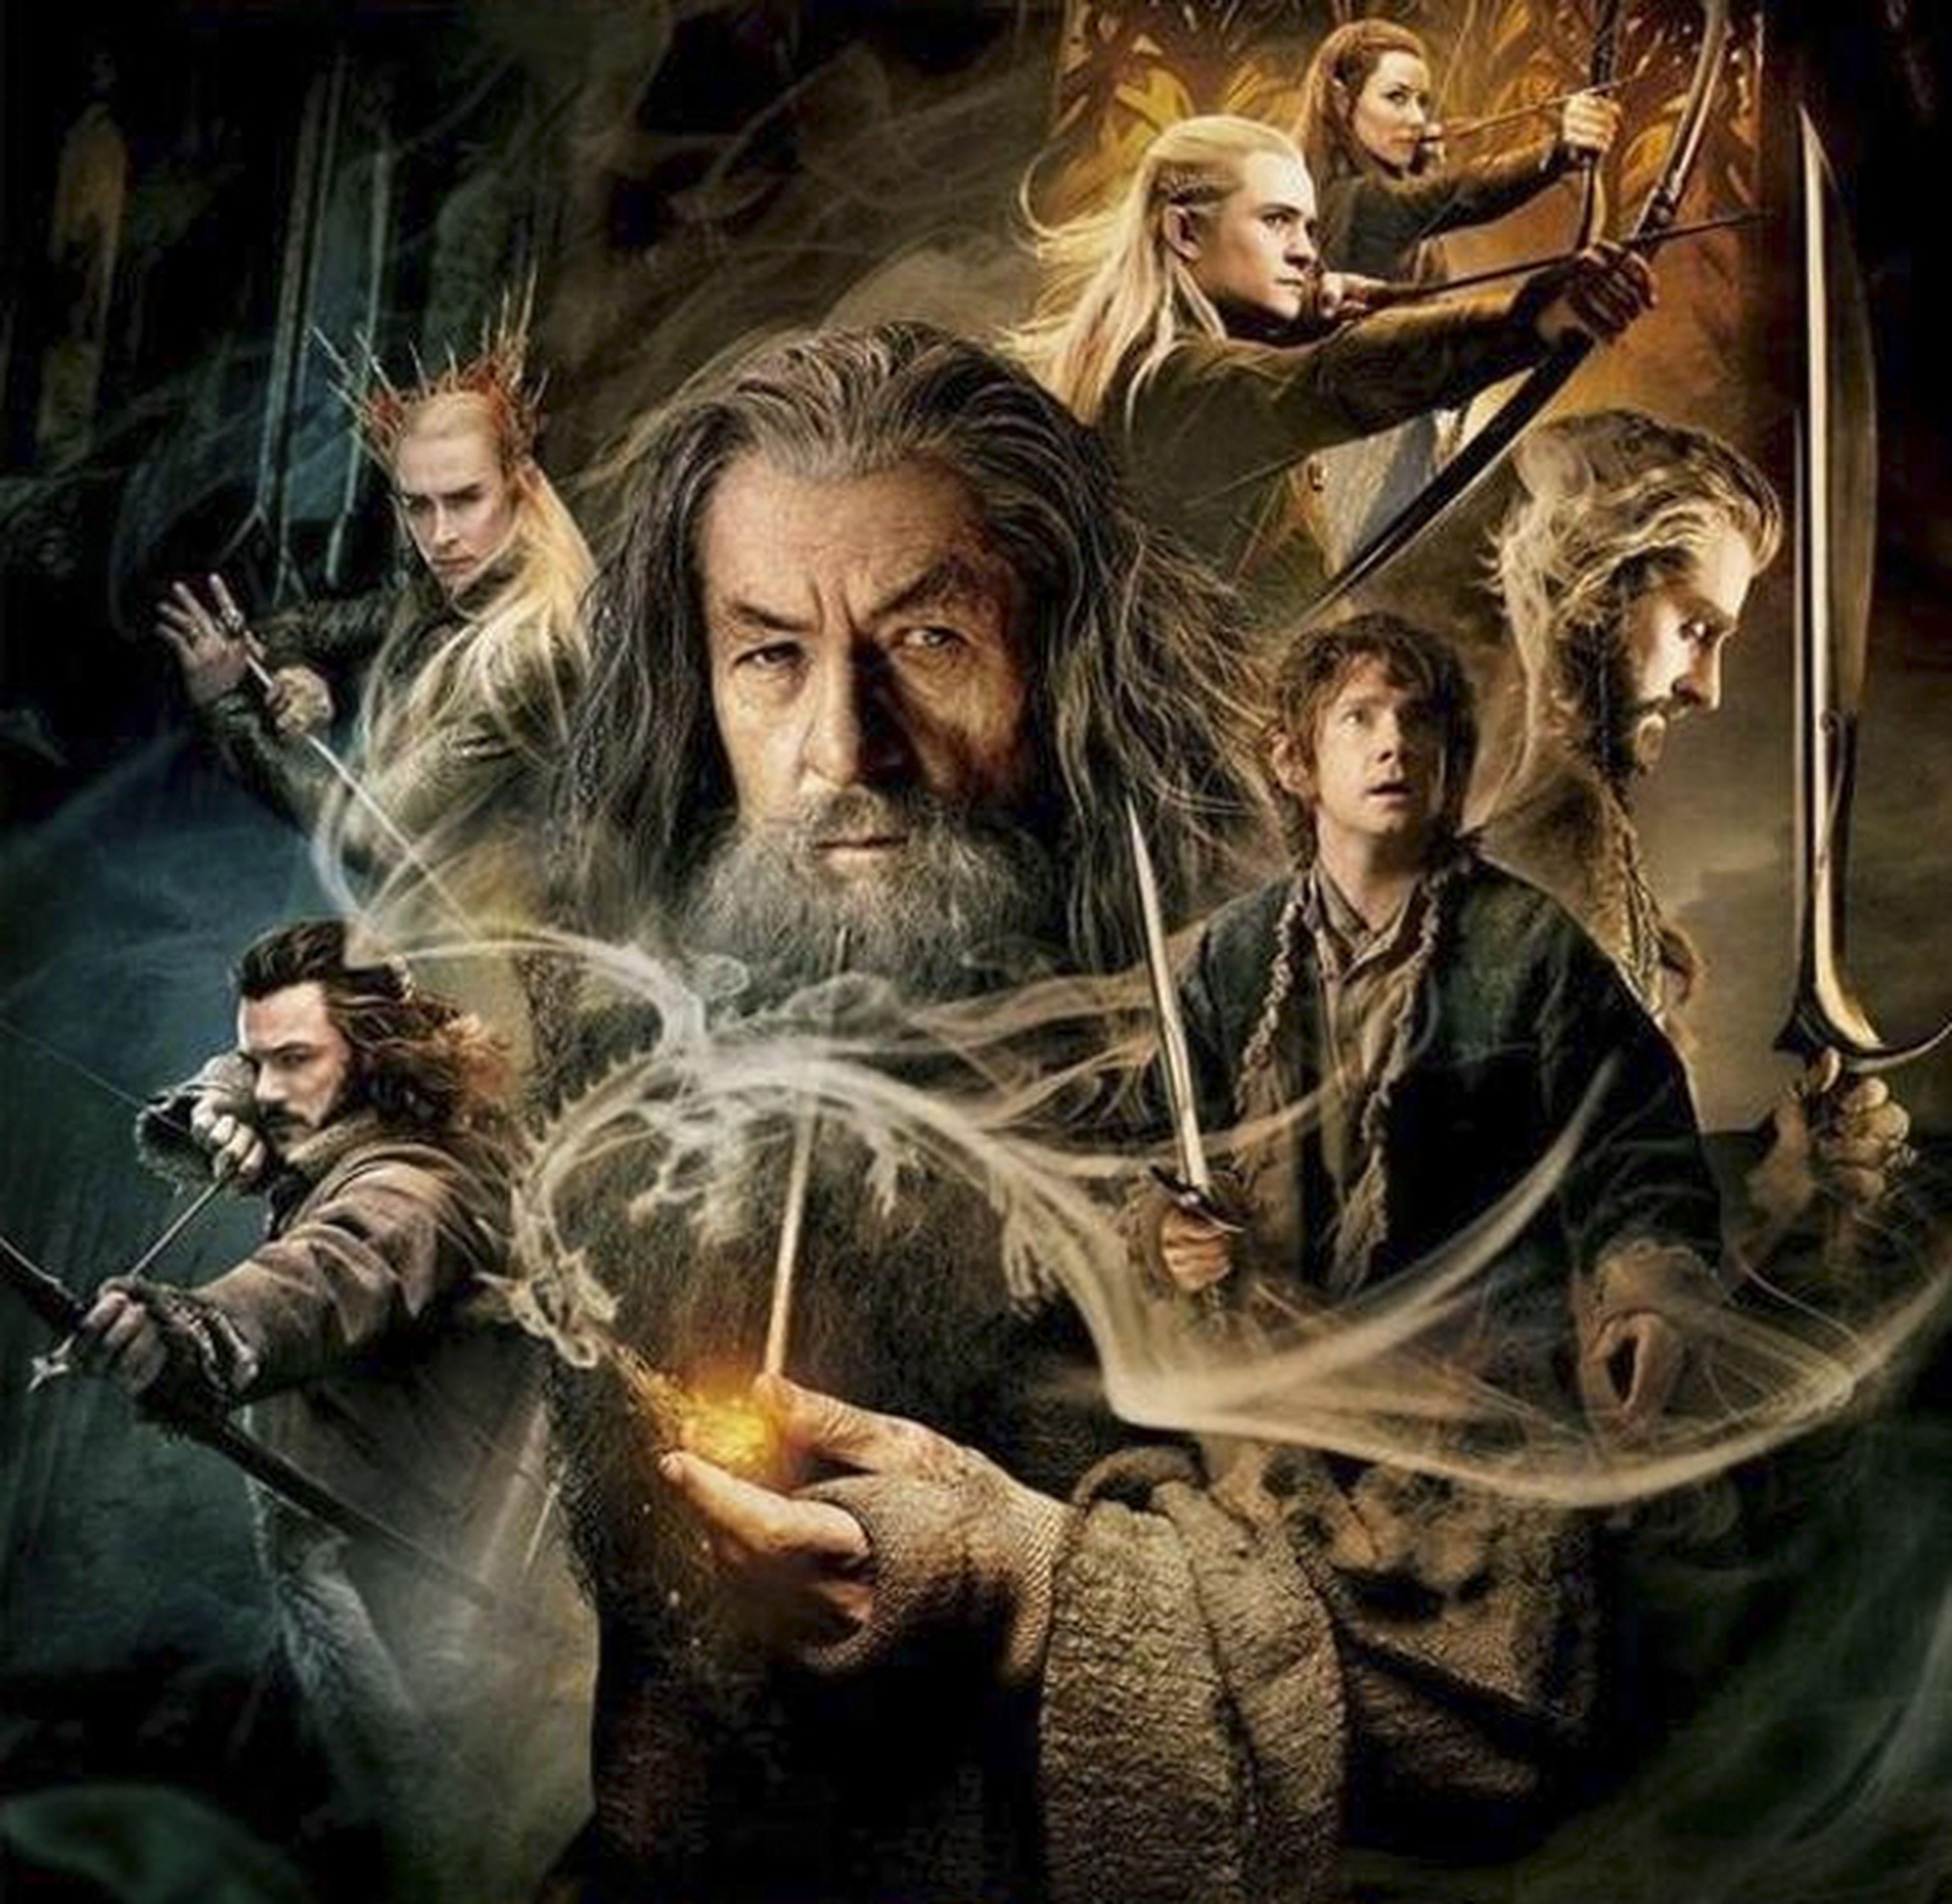 Escenas eliminadas de El hobbit: la desolación de Smaug ¡27 minutos extra!